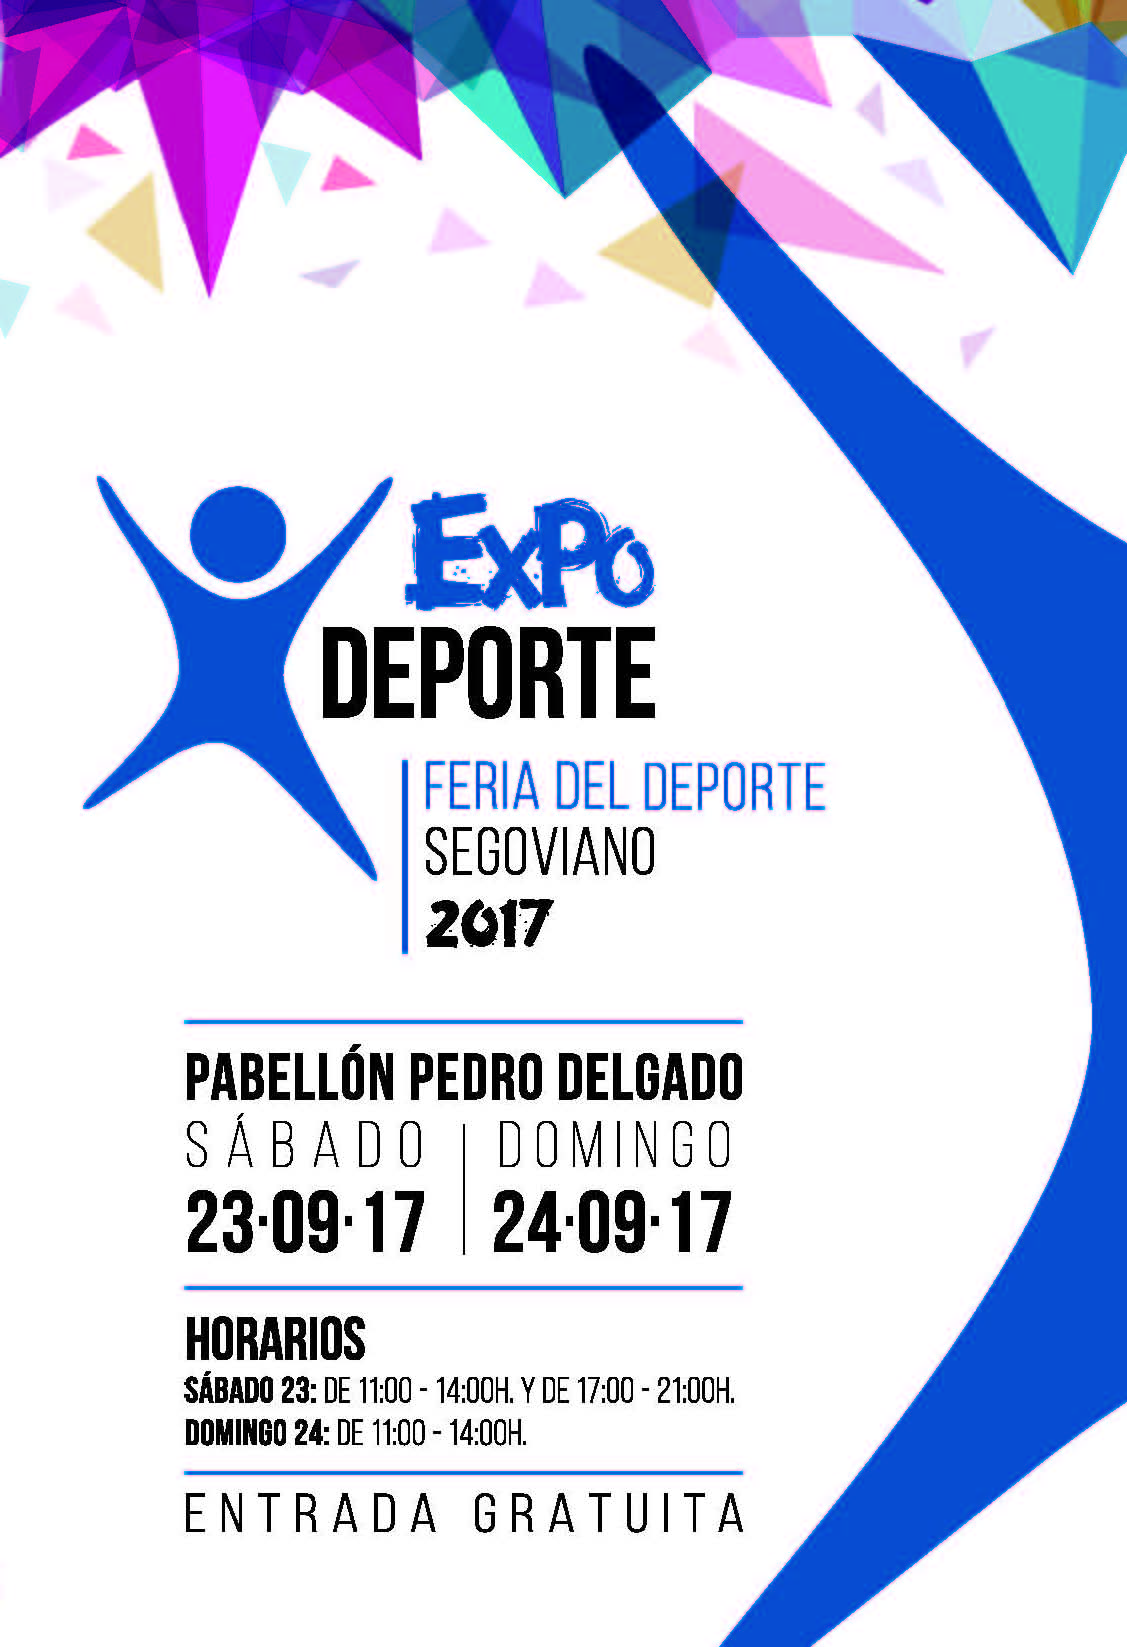 Expodeporte 2017